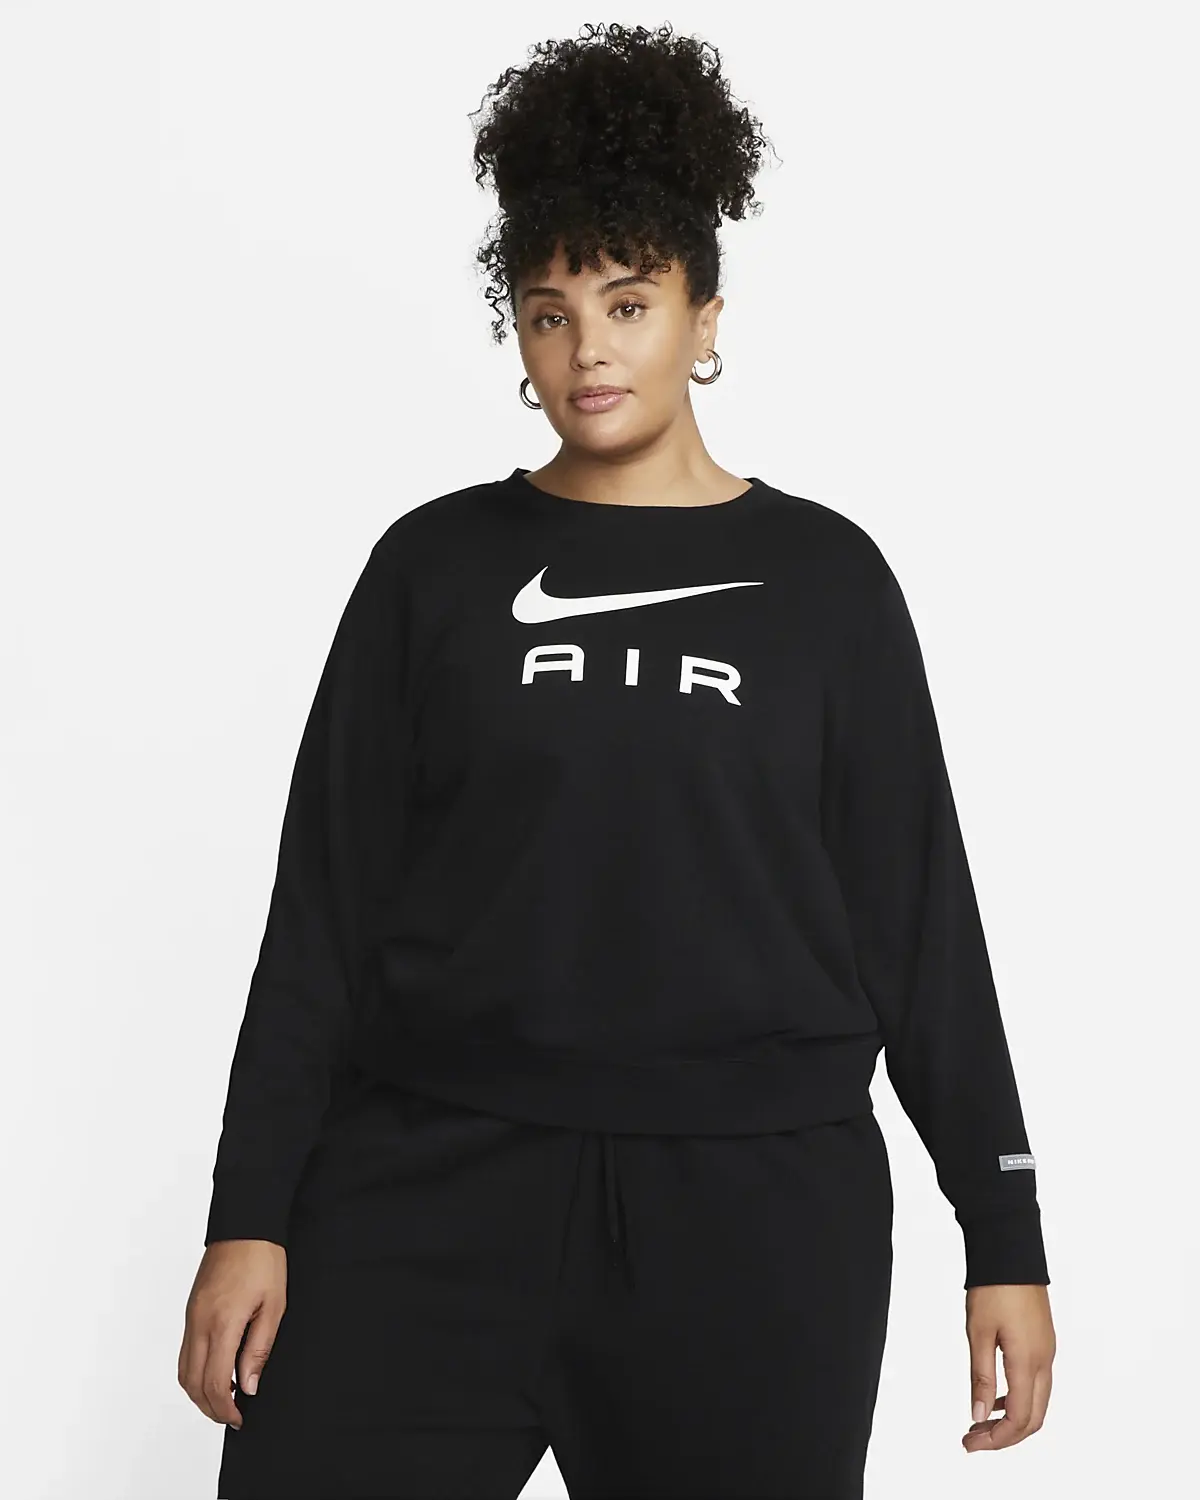 Nike Air. 1